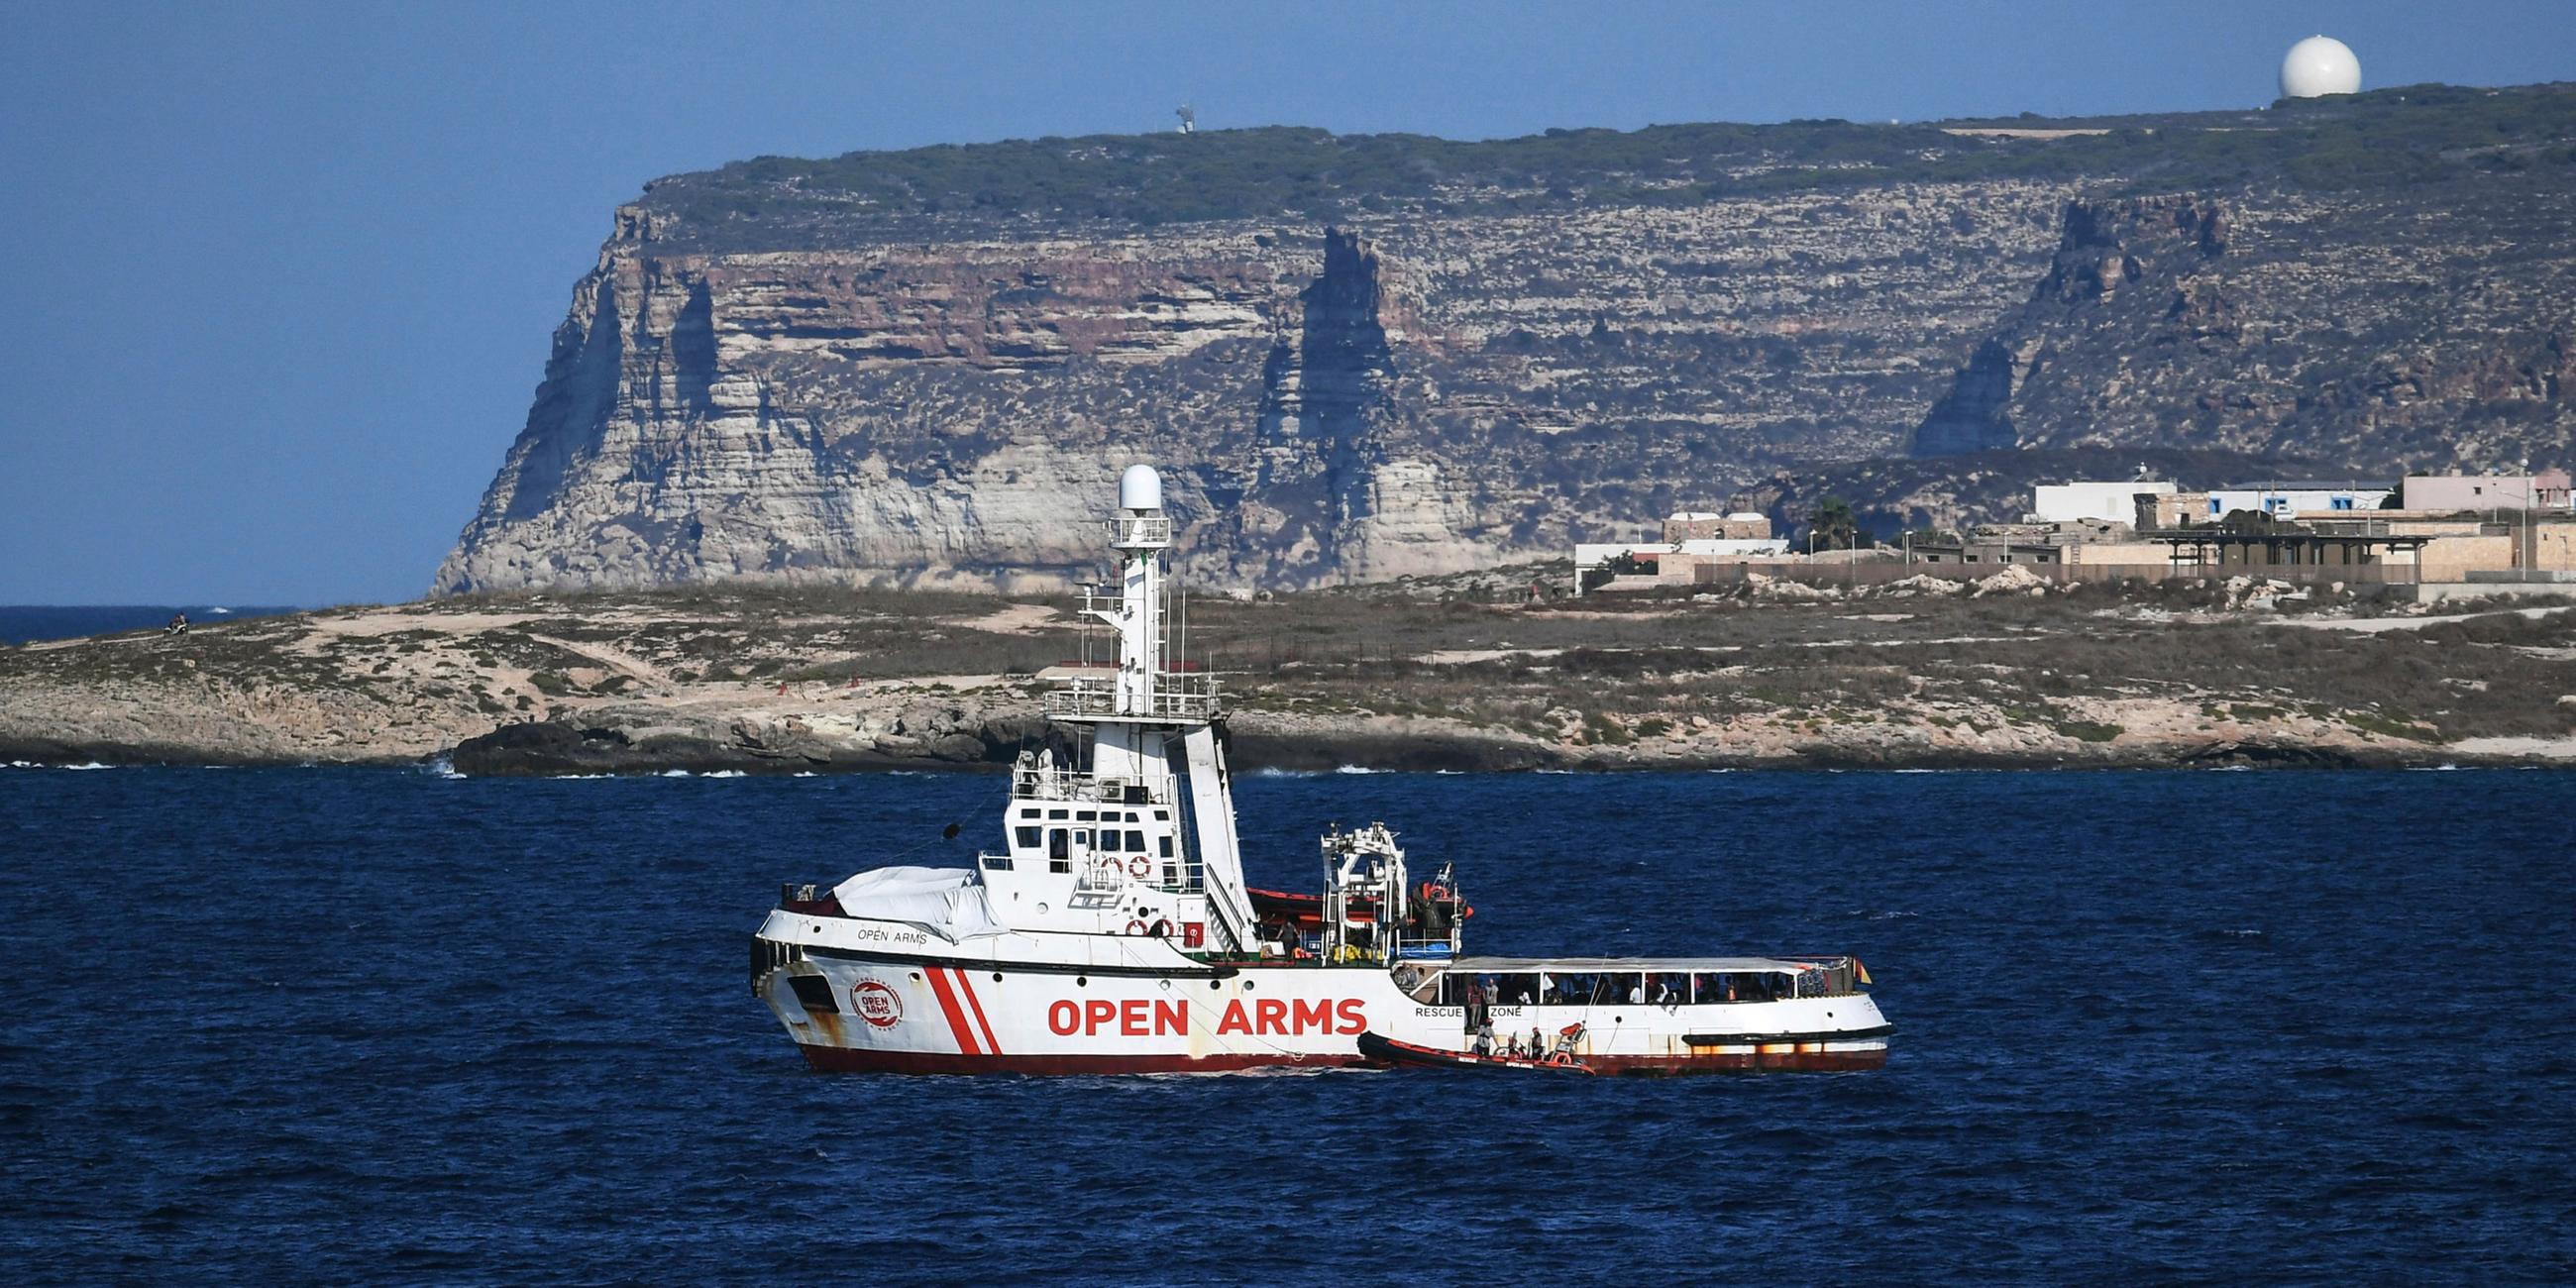 Das Rettungsschiff "Open Arms" vor der sizilianischen Insel Lampedusa am 19. August 2019. Lampedusa, Italien